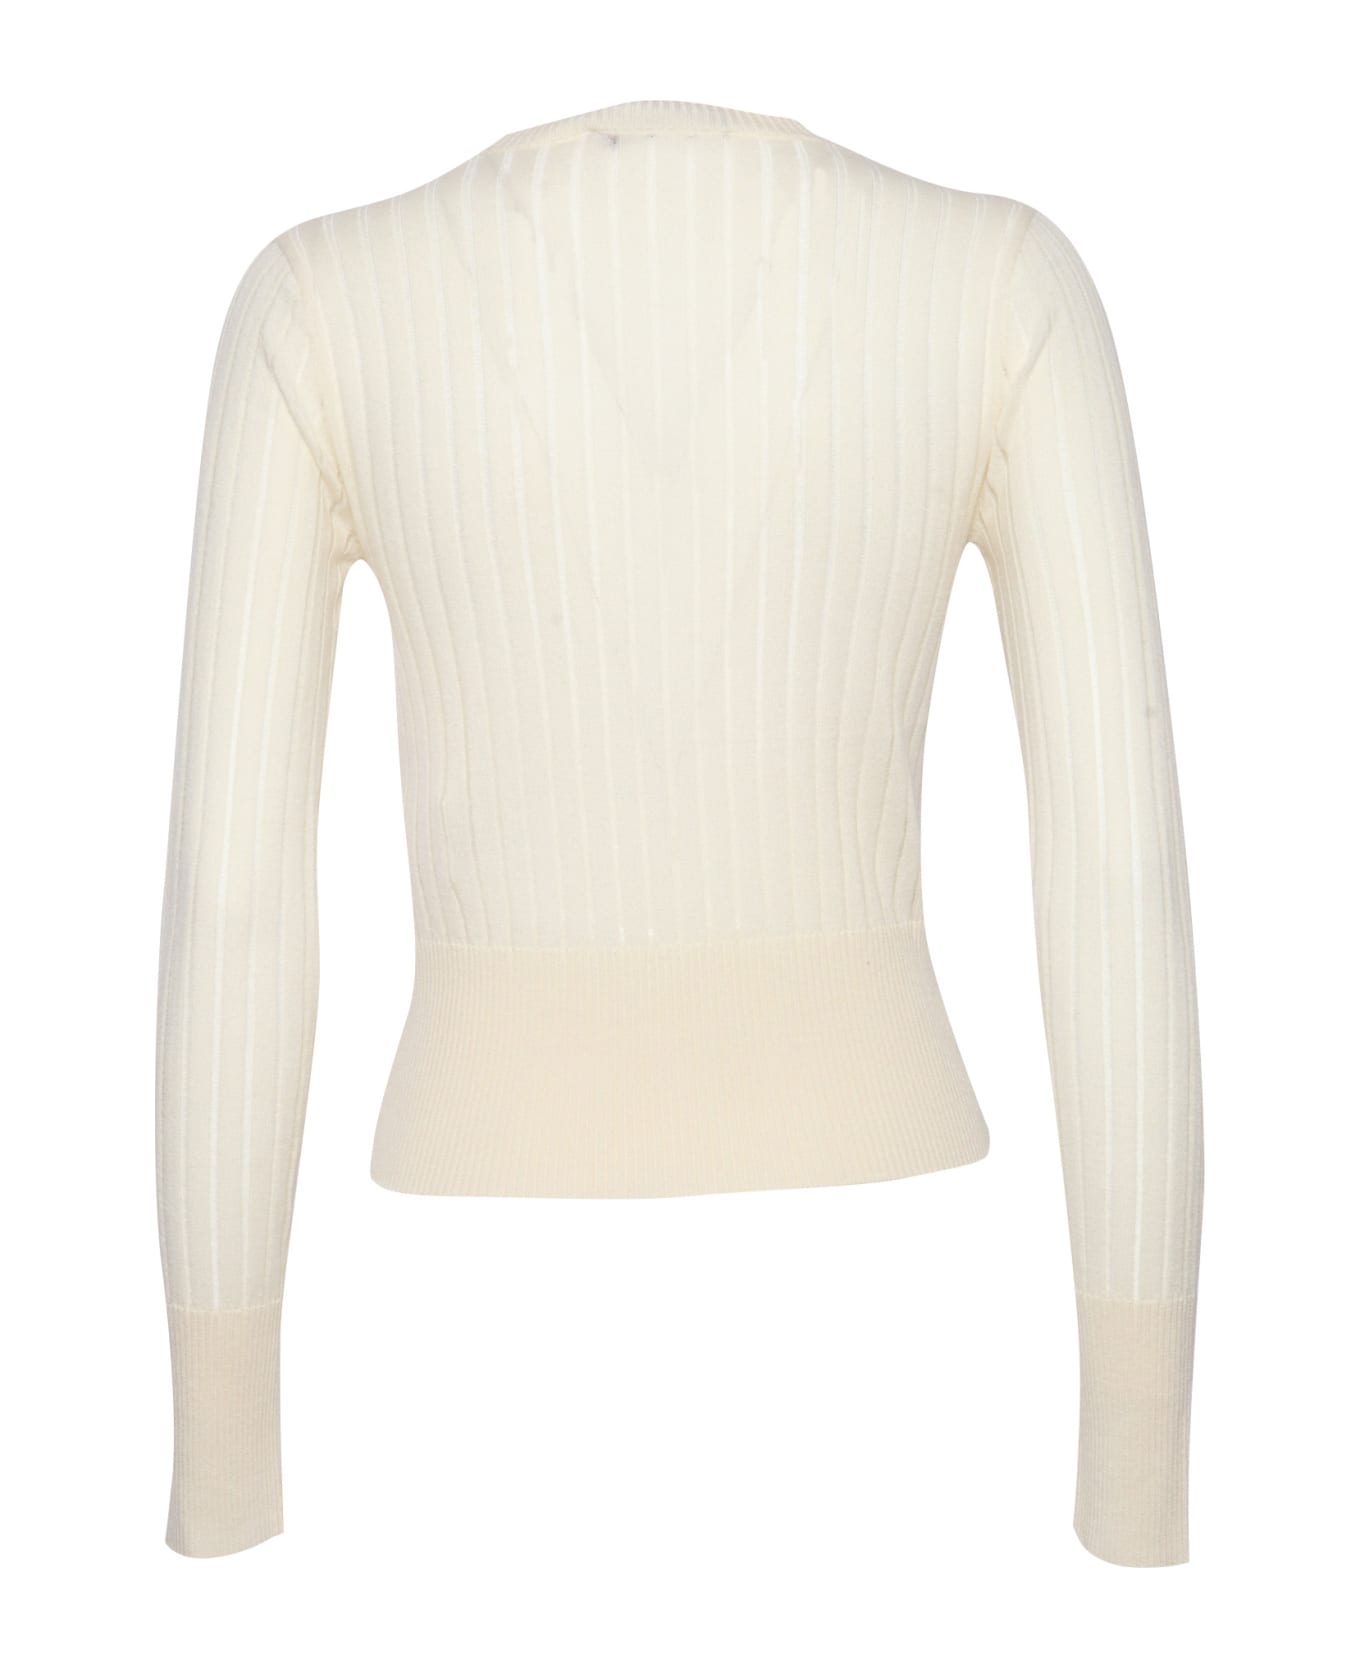 Max Mara Studio Funale Sweater - WHITE ニットウェア